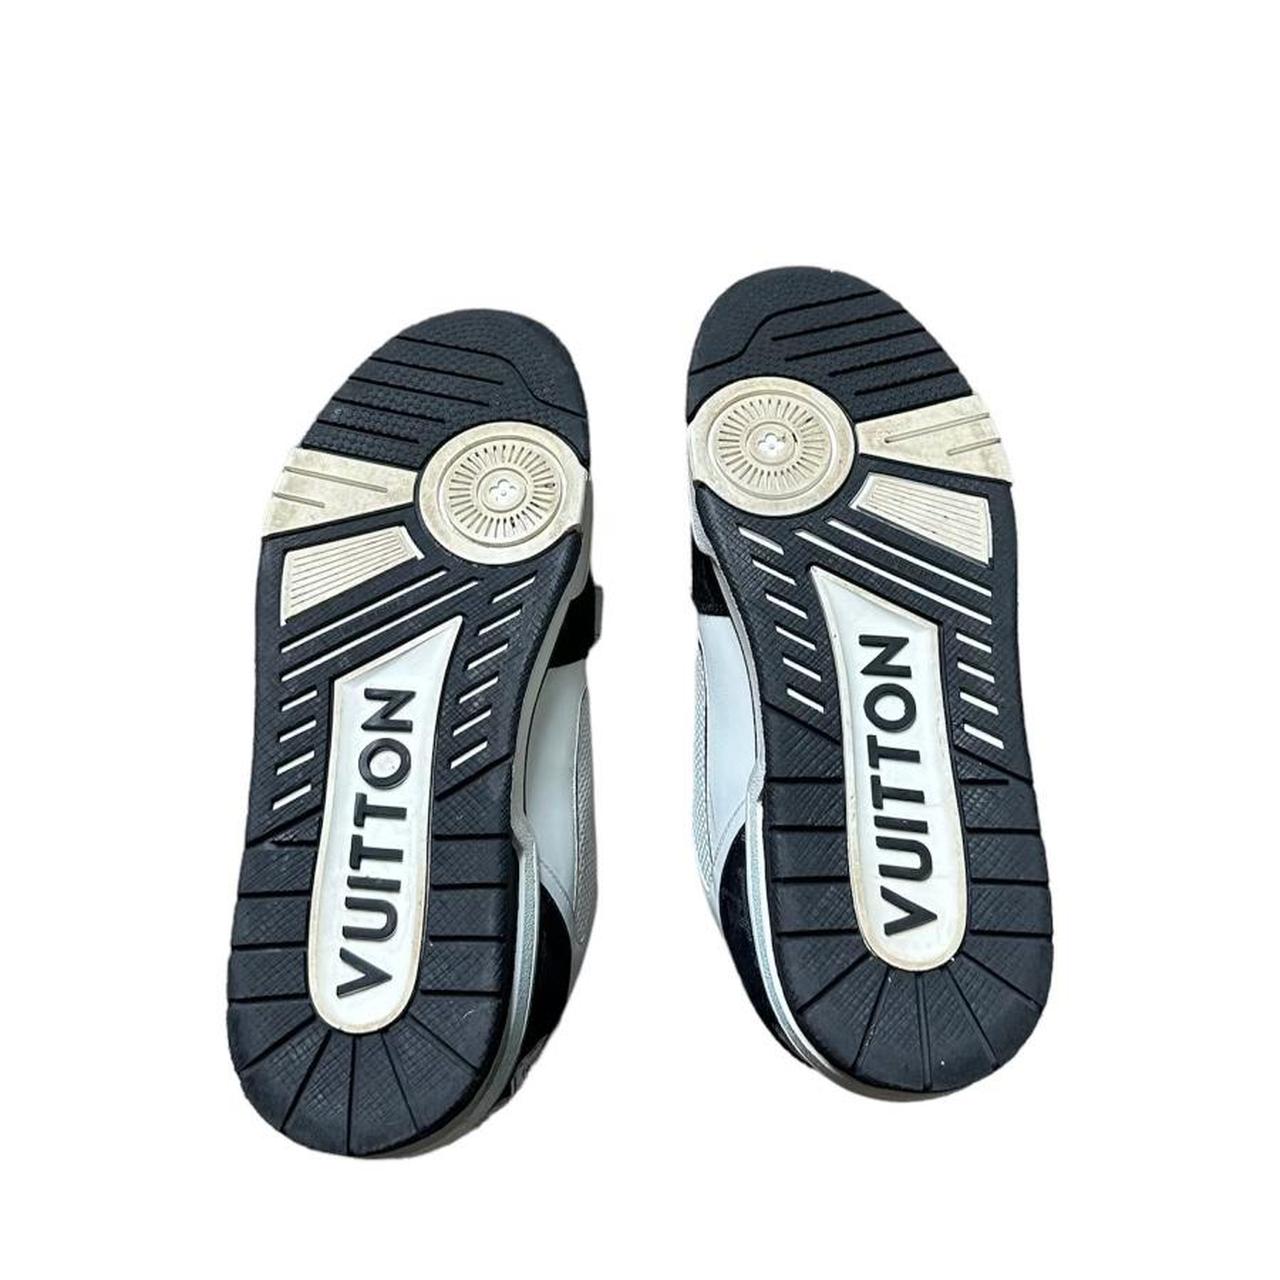 Louis Vuitton blue lv trainer strap sneakers - Depop